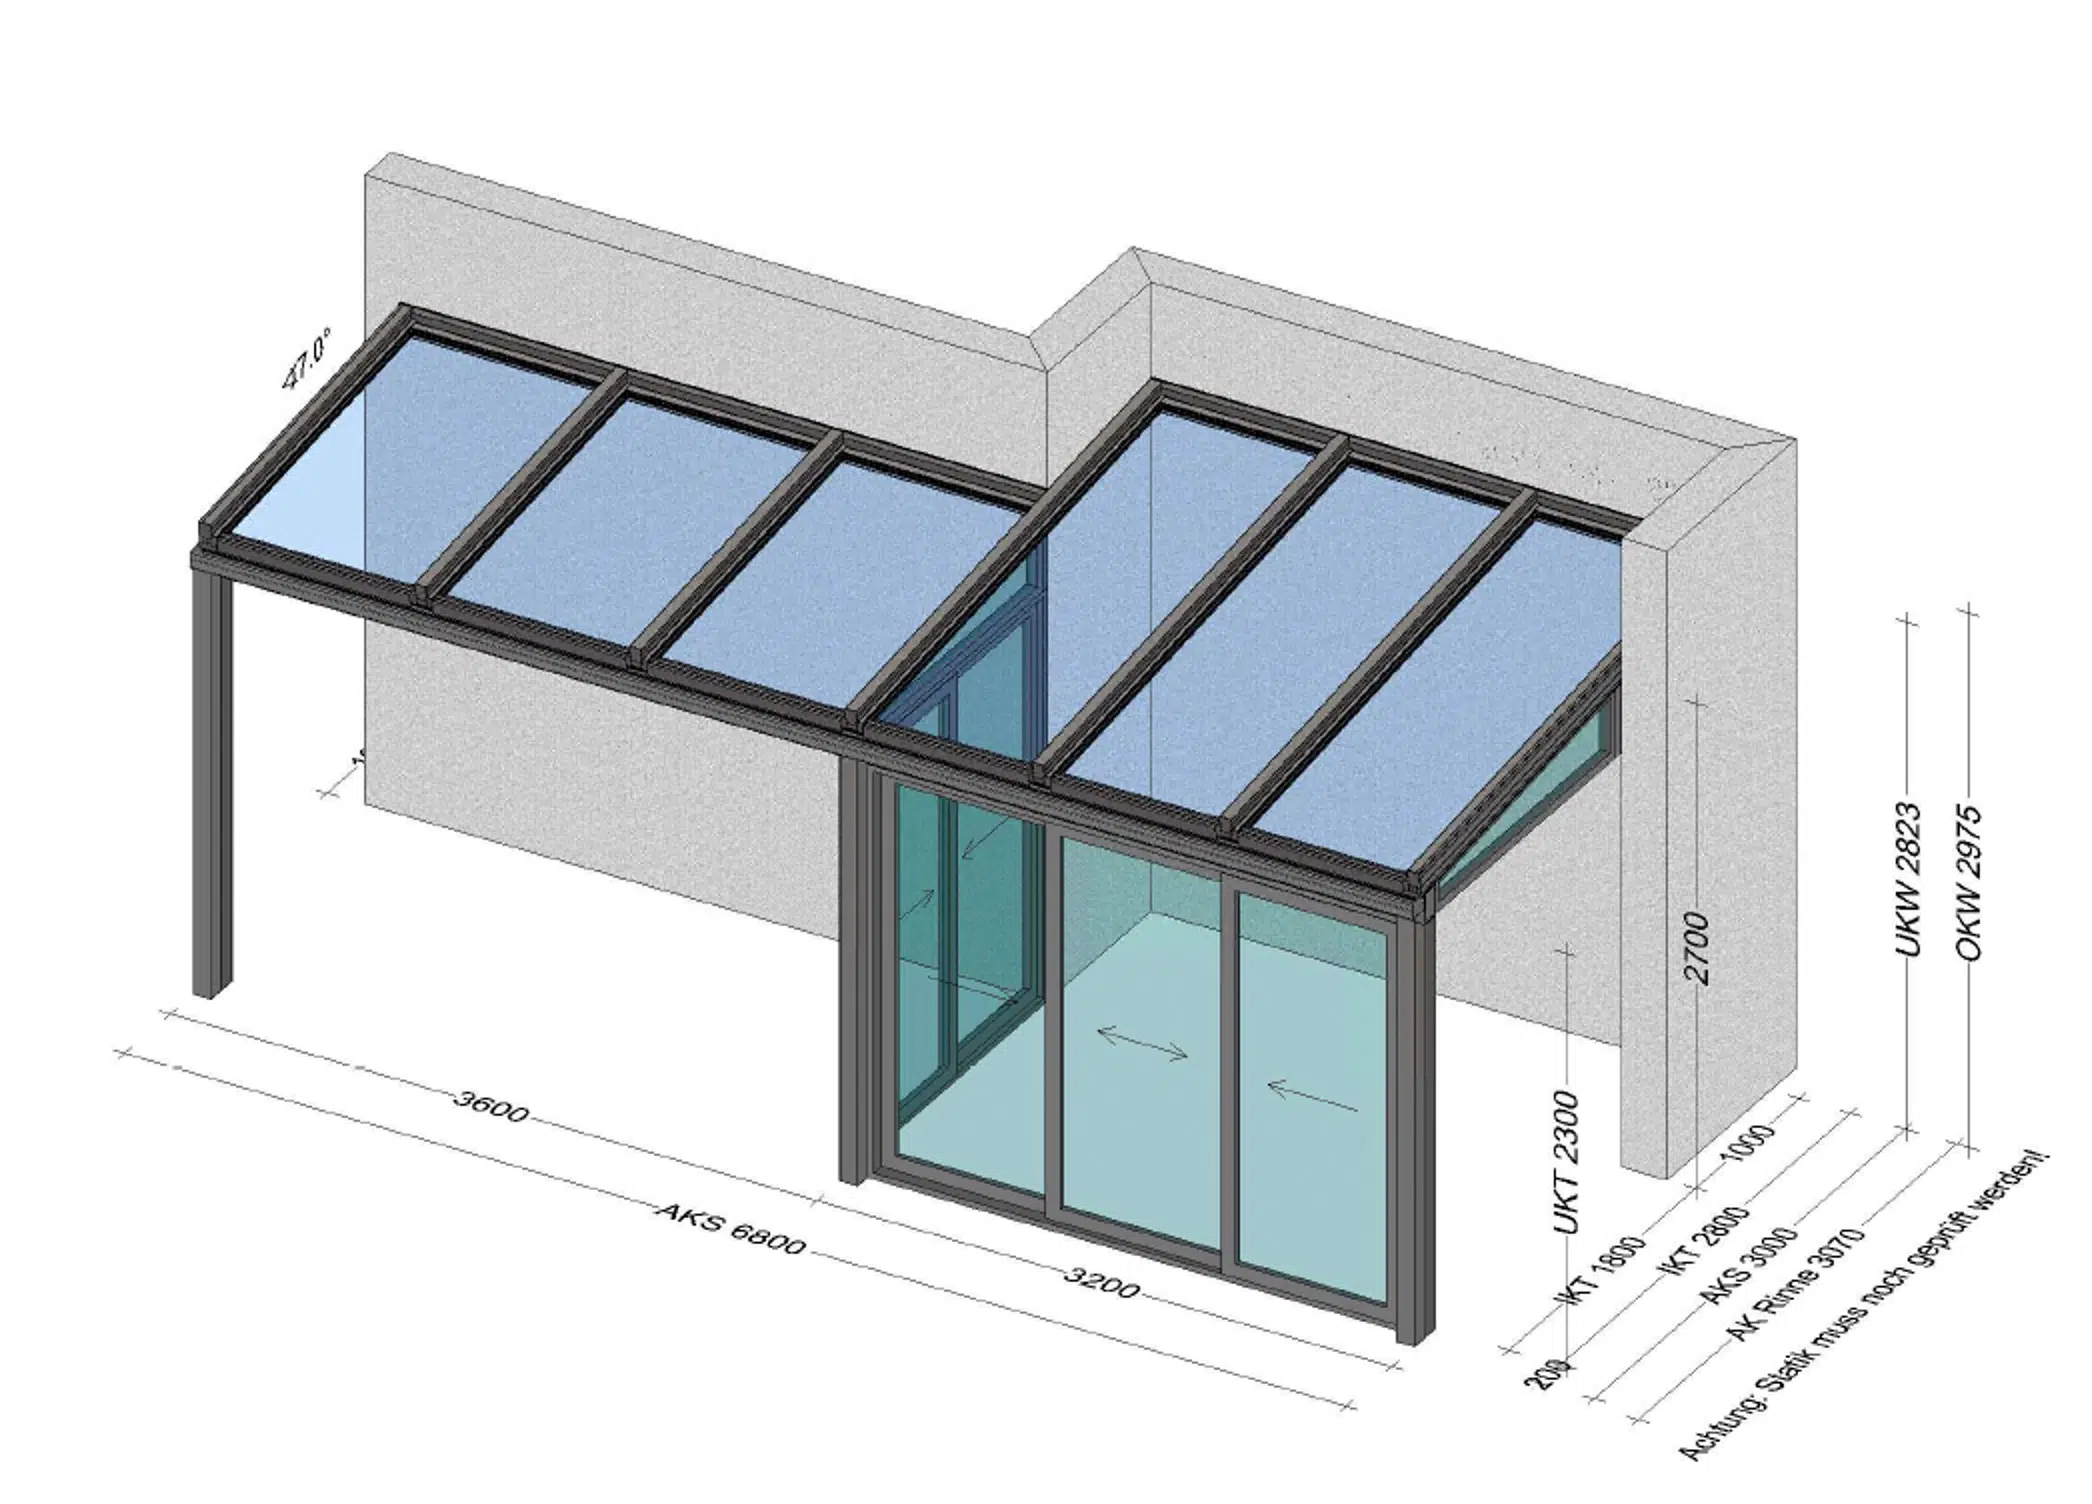 Terrassenüberdachung nach Maß in Alu - Sonderausführung mit Seitenwänden